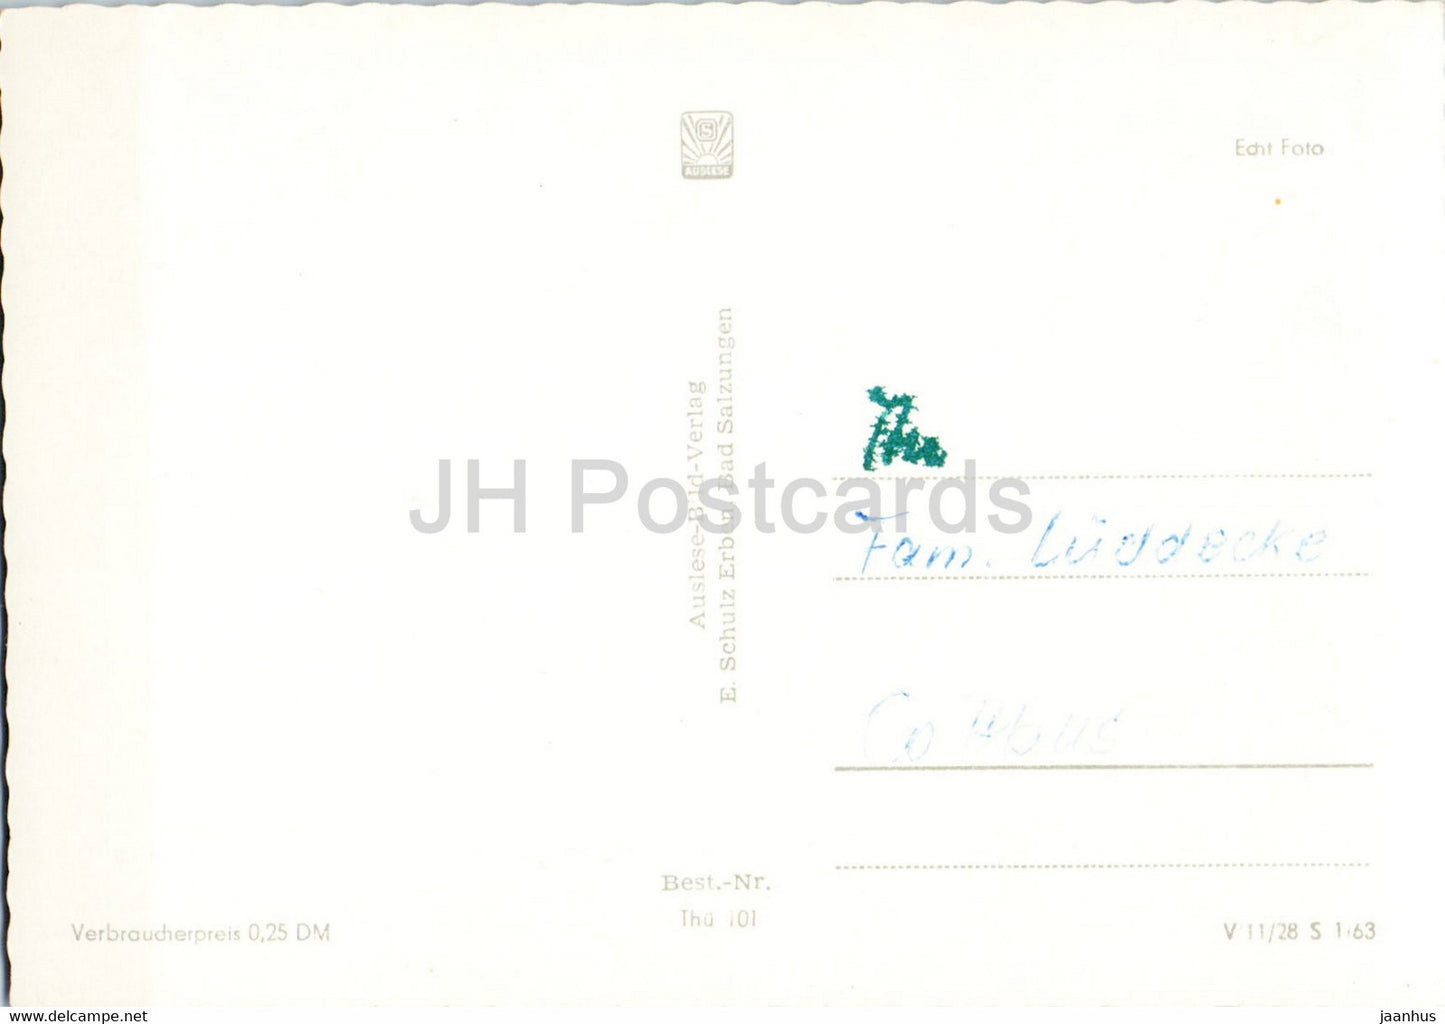 Das schone Thuringen - Wartburg - Inselsberg - Friedrichroda - Schweizerhaus - old postcard - Germany DDR - used